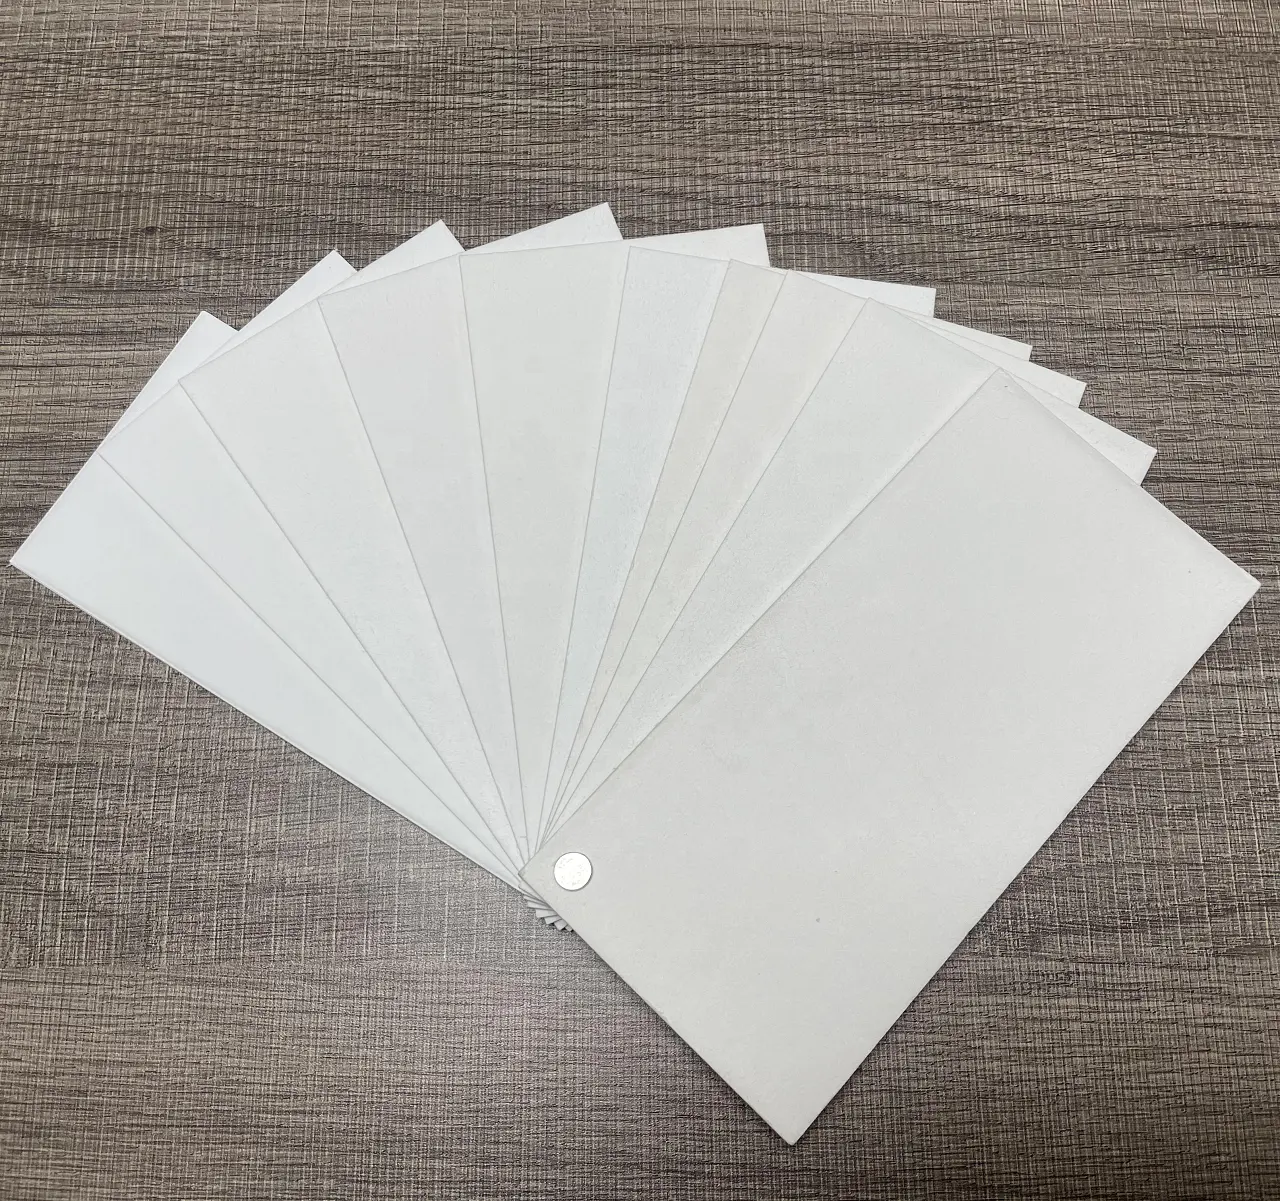 Qiang Qiang Papier Op Maat Ondoordringbare Olie Absorberende Pads, Luchtverfrisser Op Maat Papier Auto Luchtverfrisser, Papier Luchtverfrisser